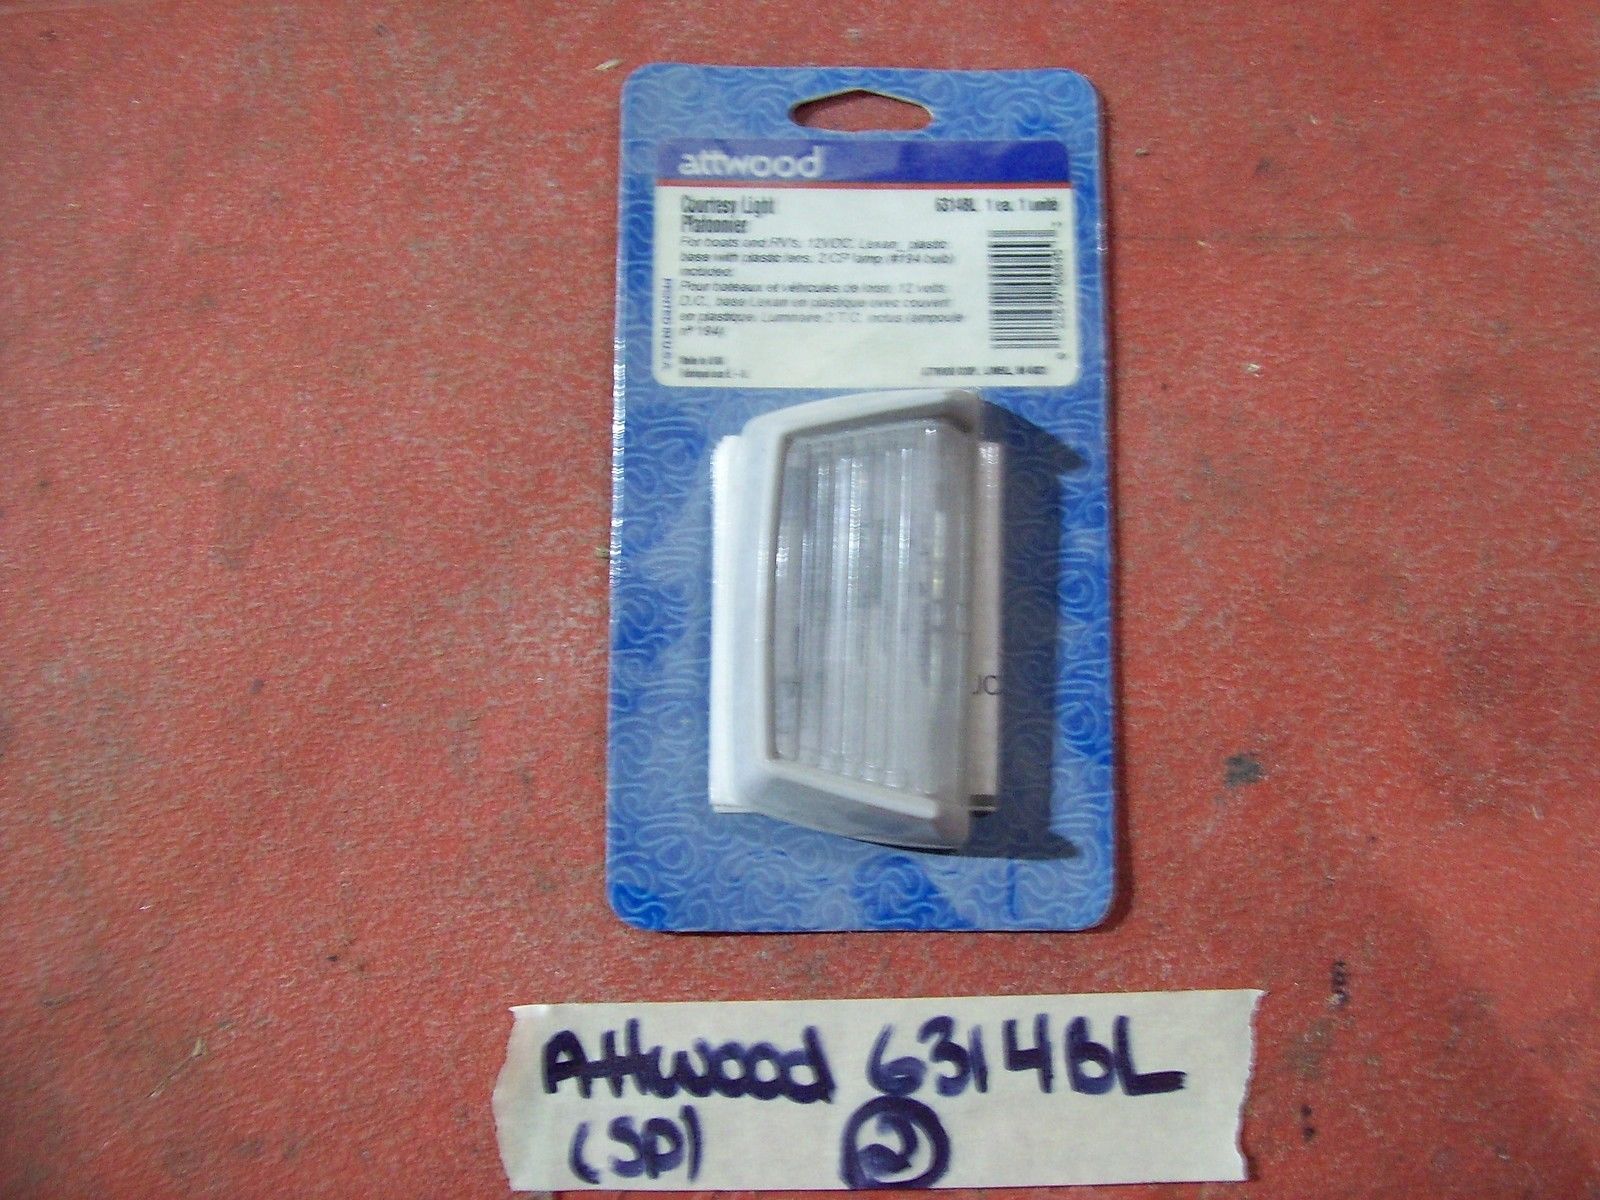 Attwood Courtesy Light 12VDC Lexan Plastic 6314BL